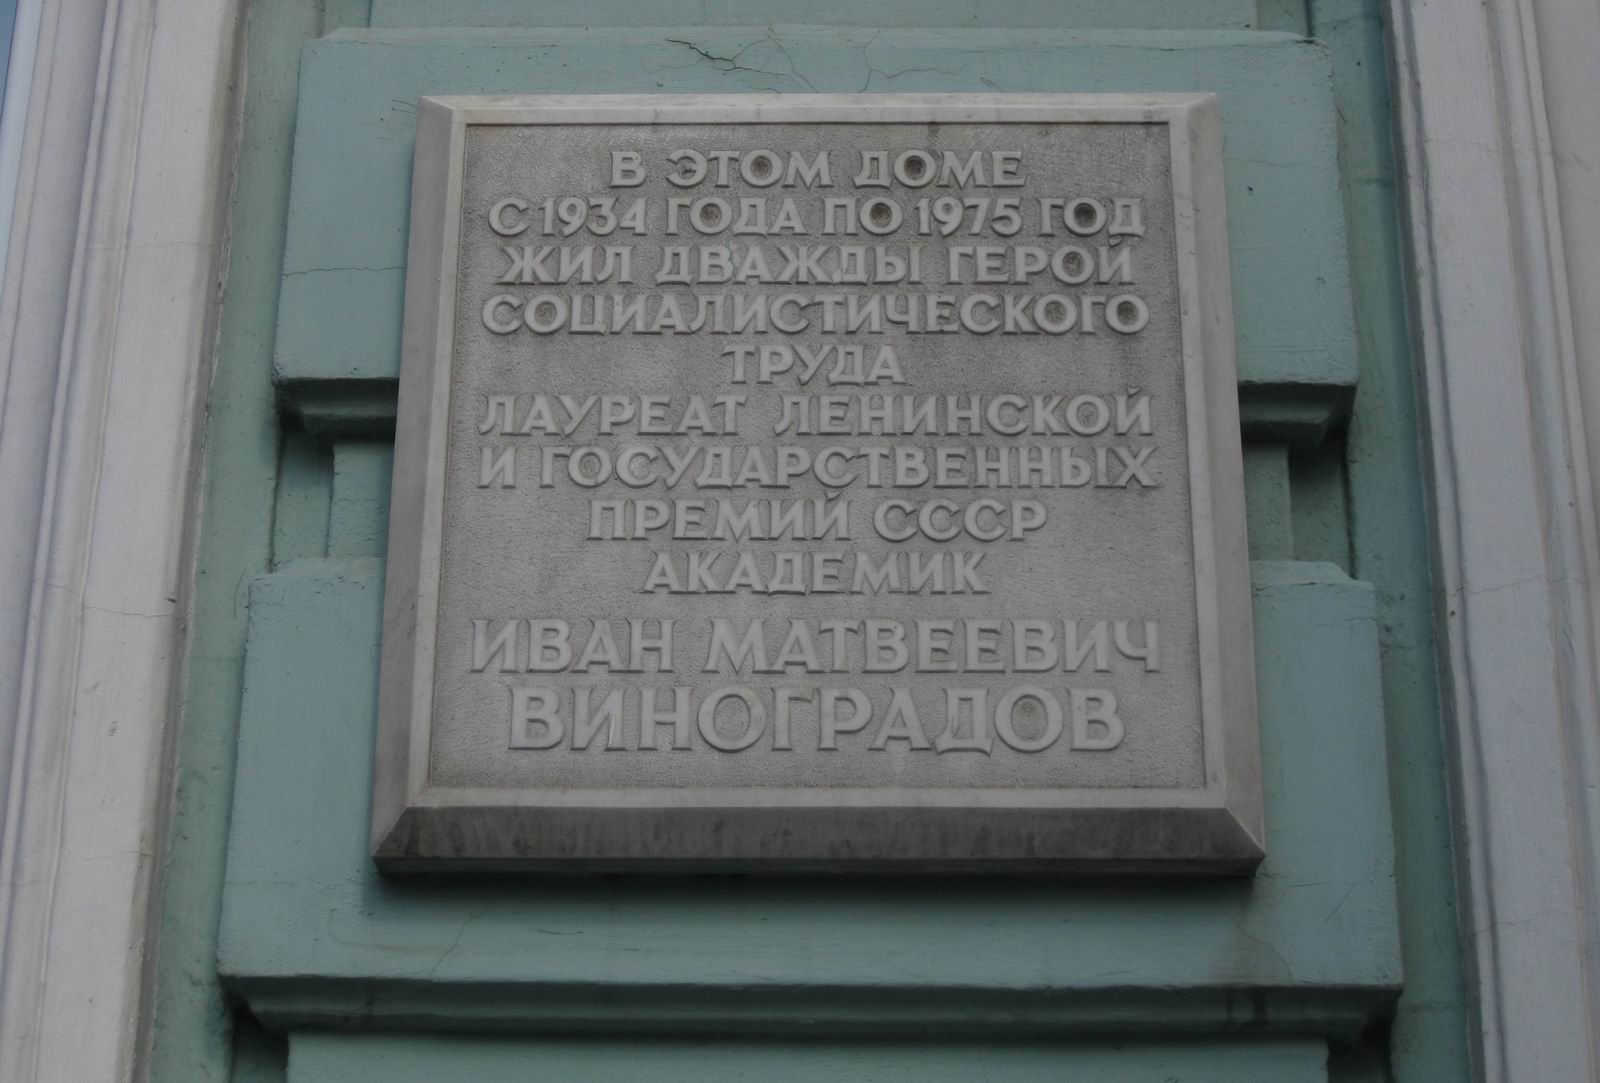 Мемориальная доска Виноградову И.М. (1891-1983), арх. А.П.Мелихов, на Тверской улице, дом 22а, открыта в 1987.